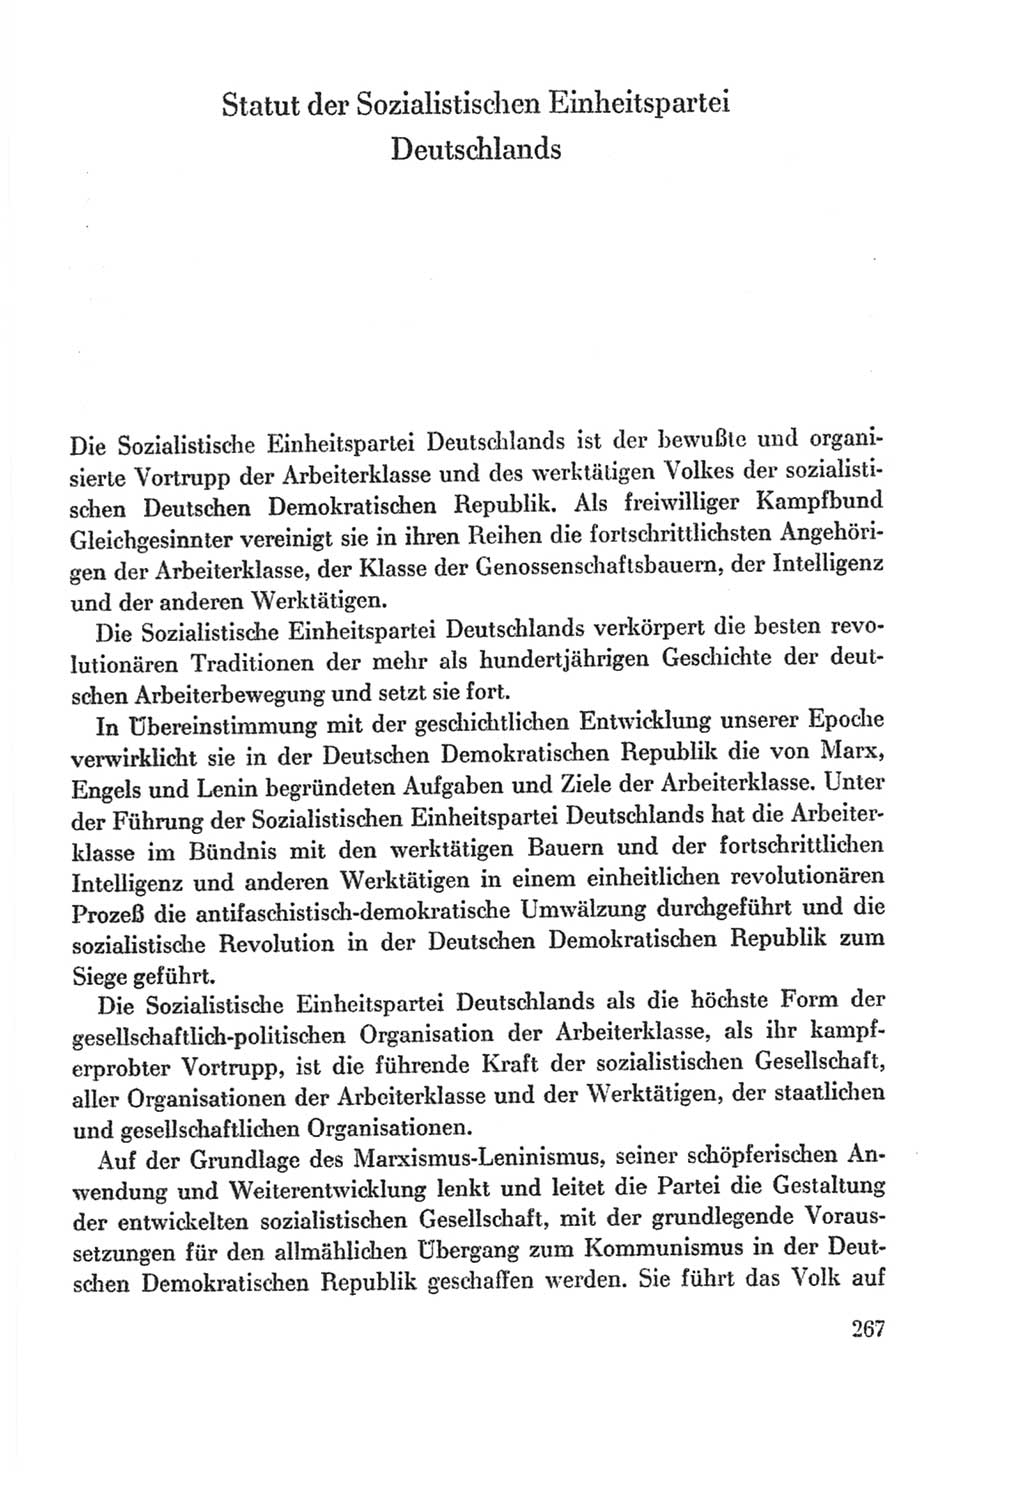 Protokoll der Verhandlungen des Ⅸ. Parteitages der Sozialistischen Einheitspartei Deutschlands (SED) [Deutsche Demokratische Republik (DDR)] 1976, Band 2, Seite 267 (Prot. Verh. Ⅸ. PT SED DDR 1976, Bd. 2, S. 267)